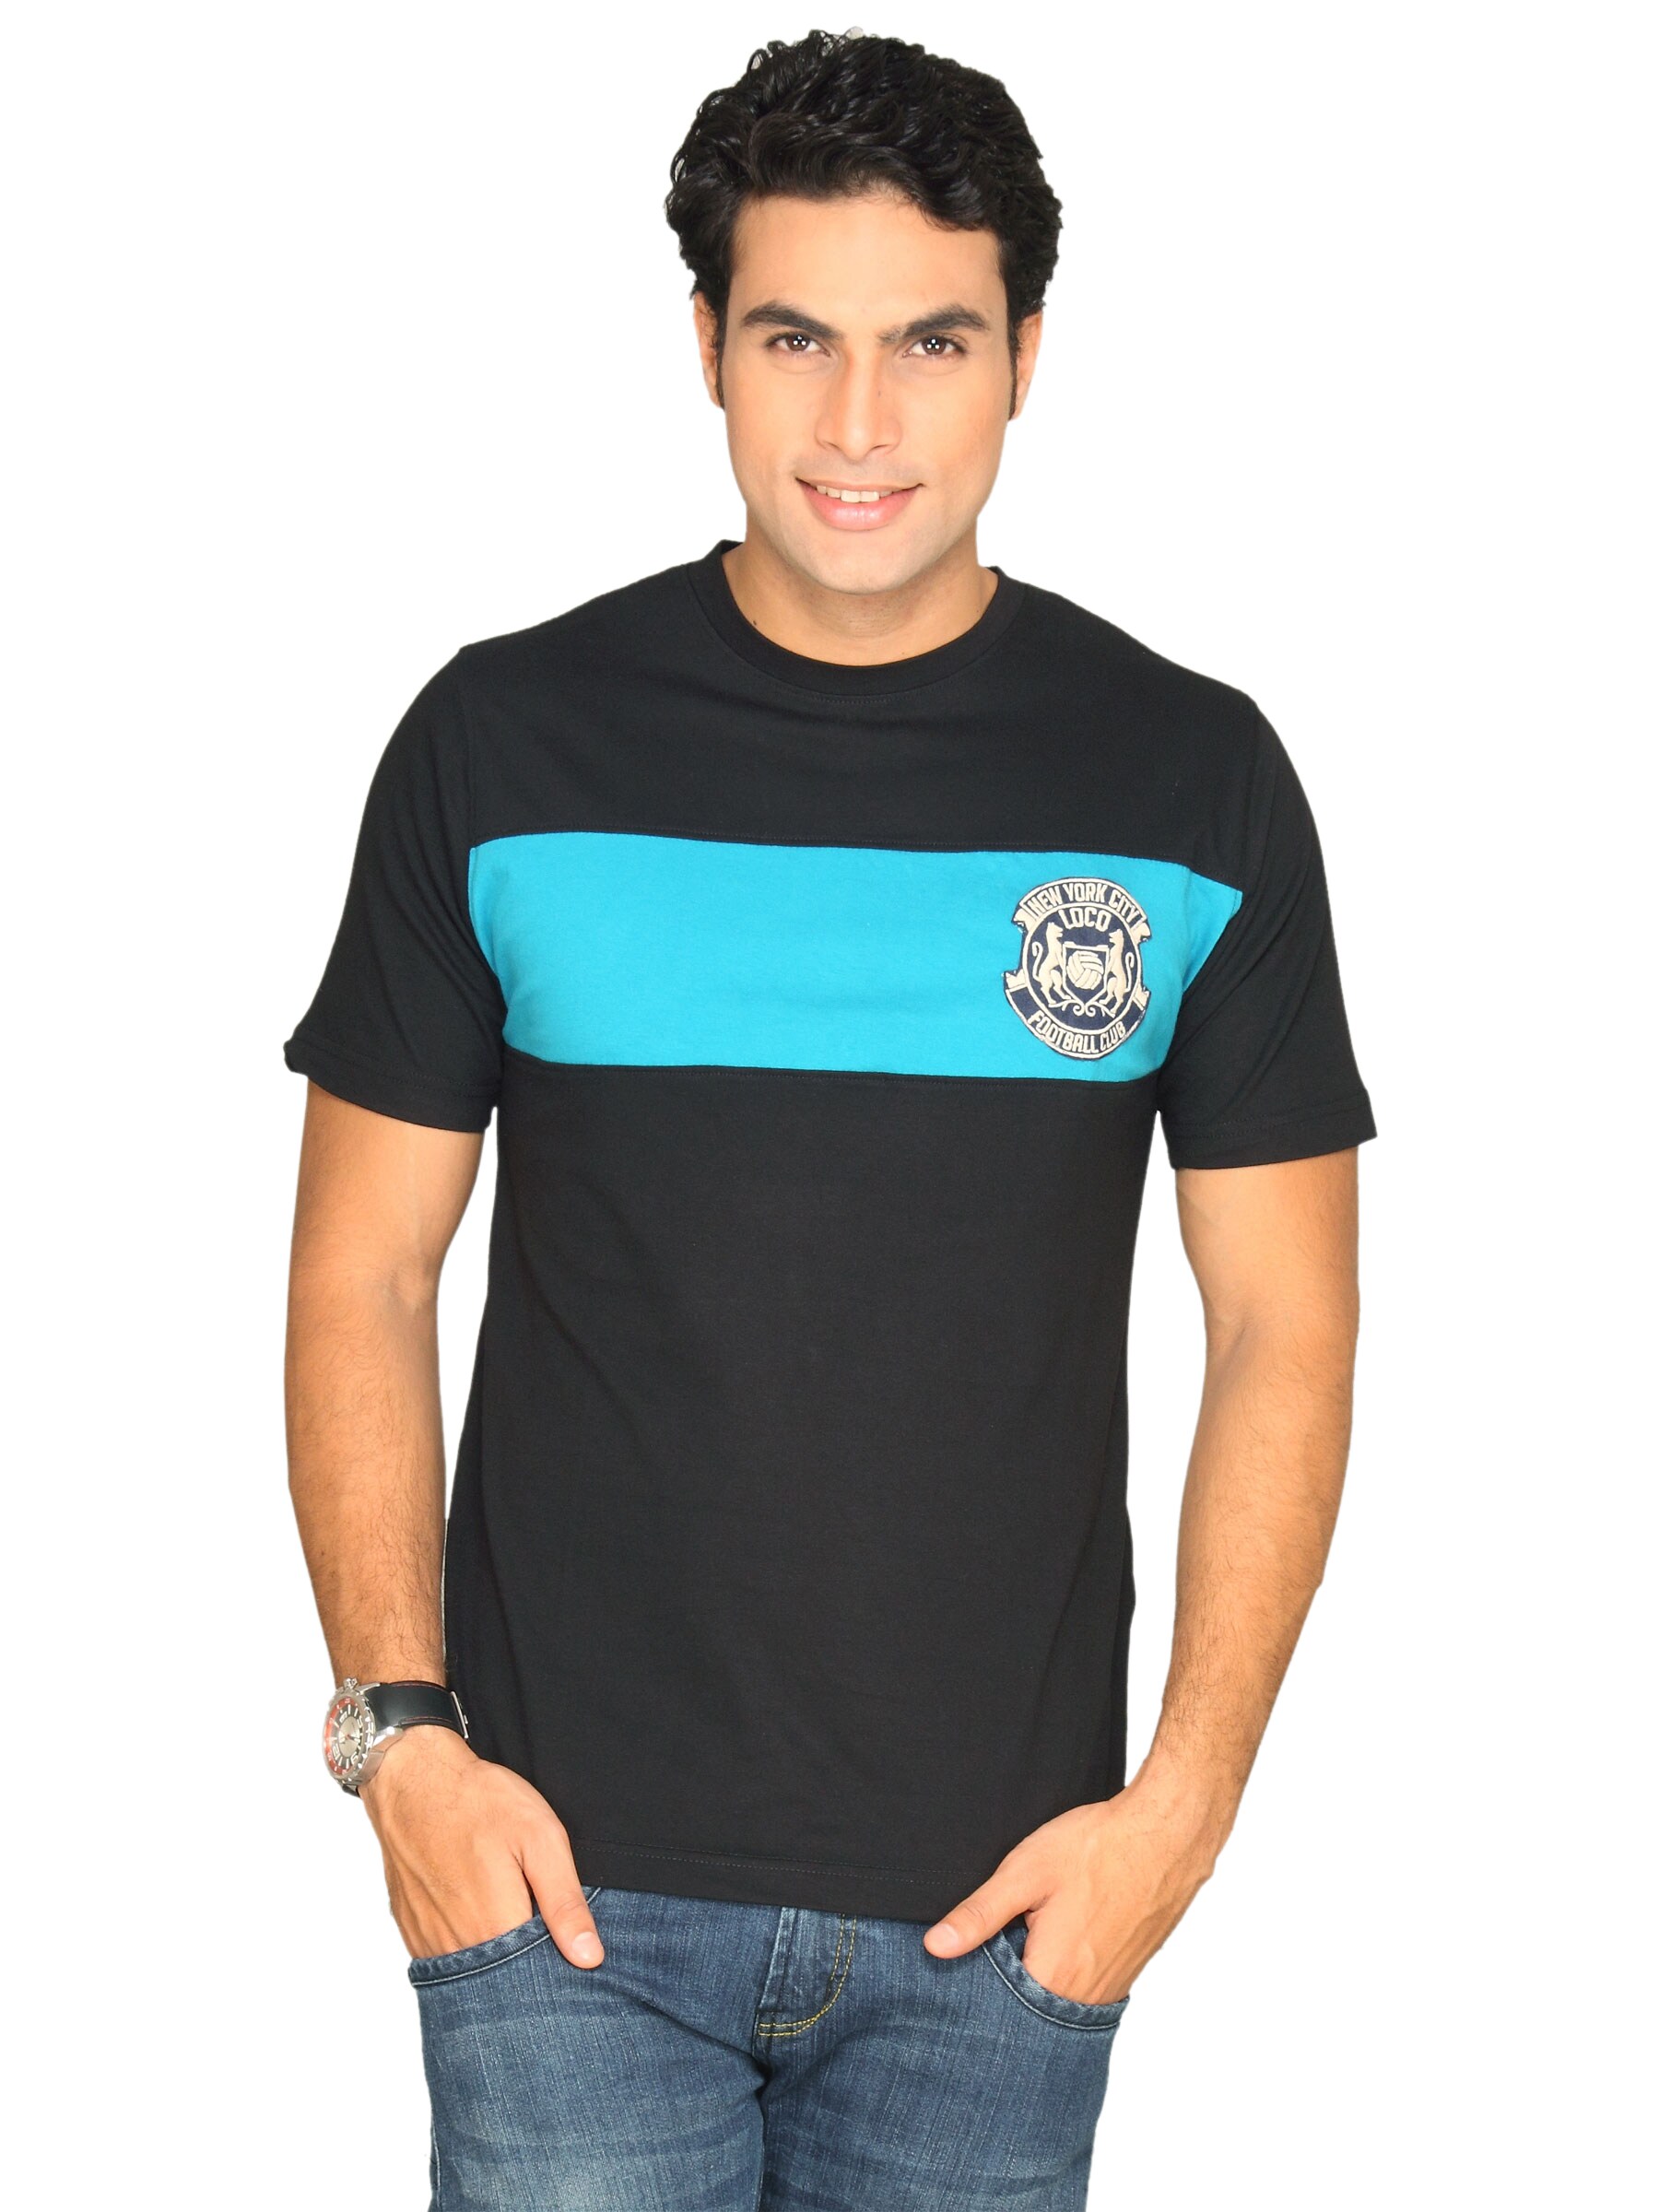 Locomotive Men's Fateeion Black Blue T-shirt